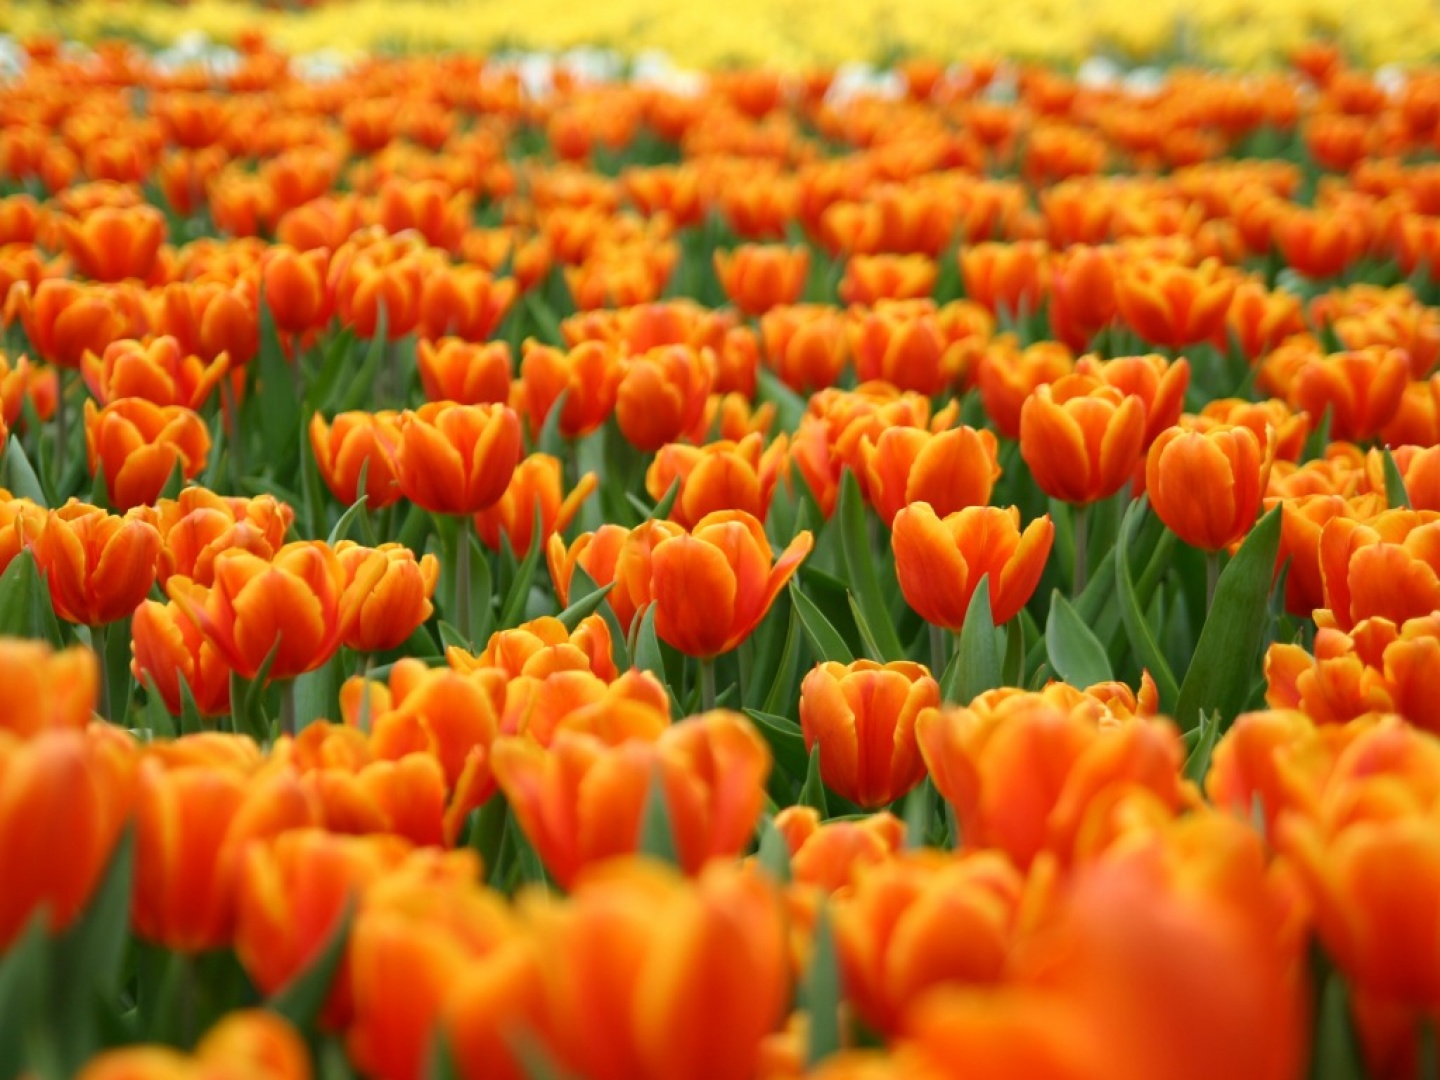 Campo+lleno+de+flores+de+color+naranja.jpg